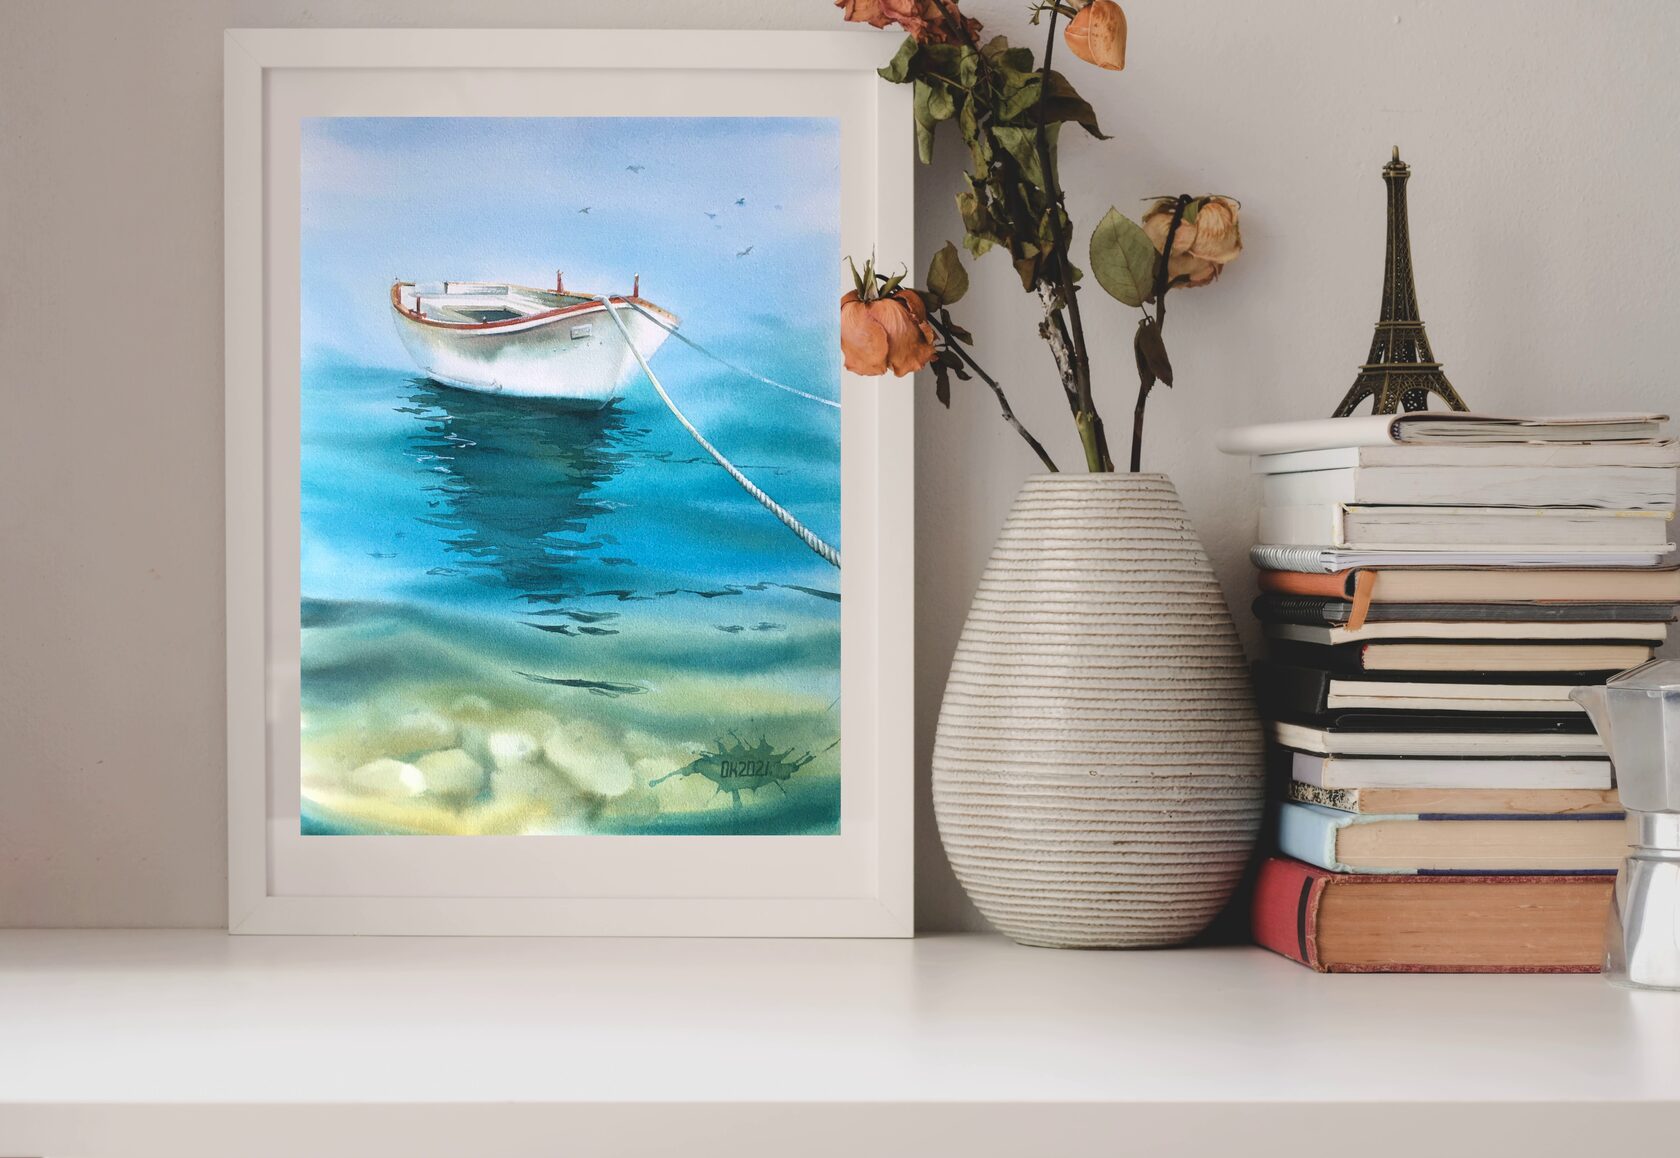 Boat at Sea painting